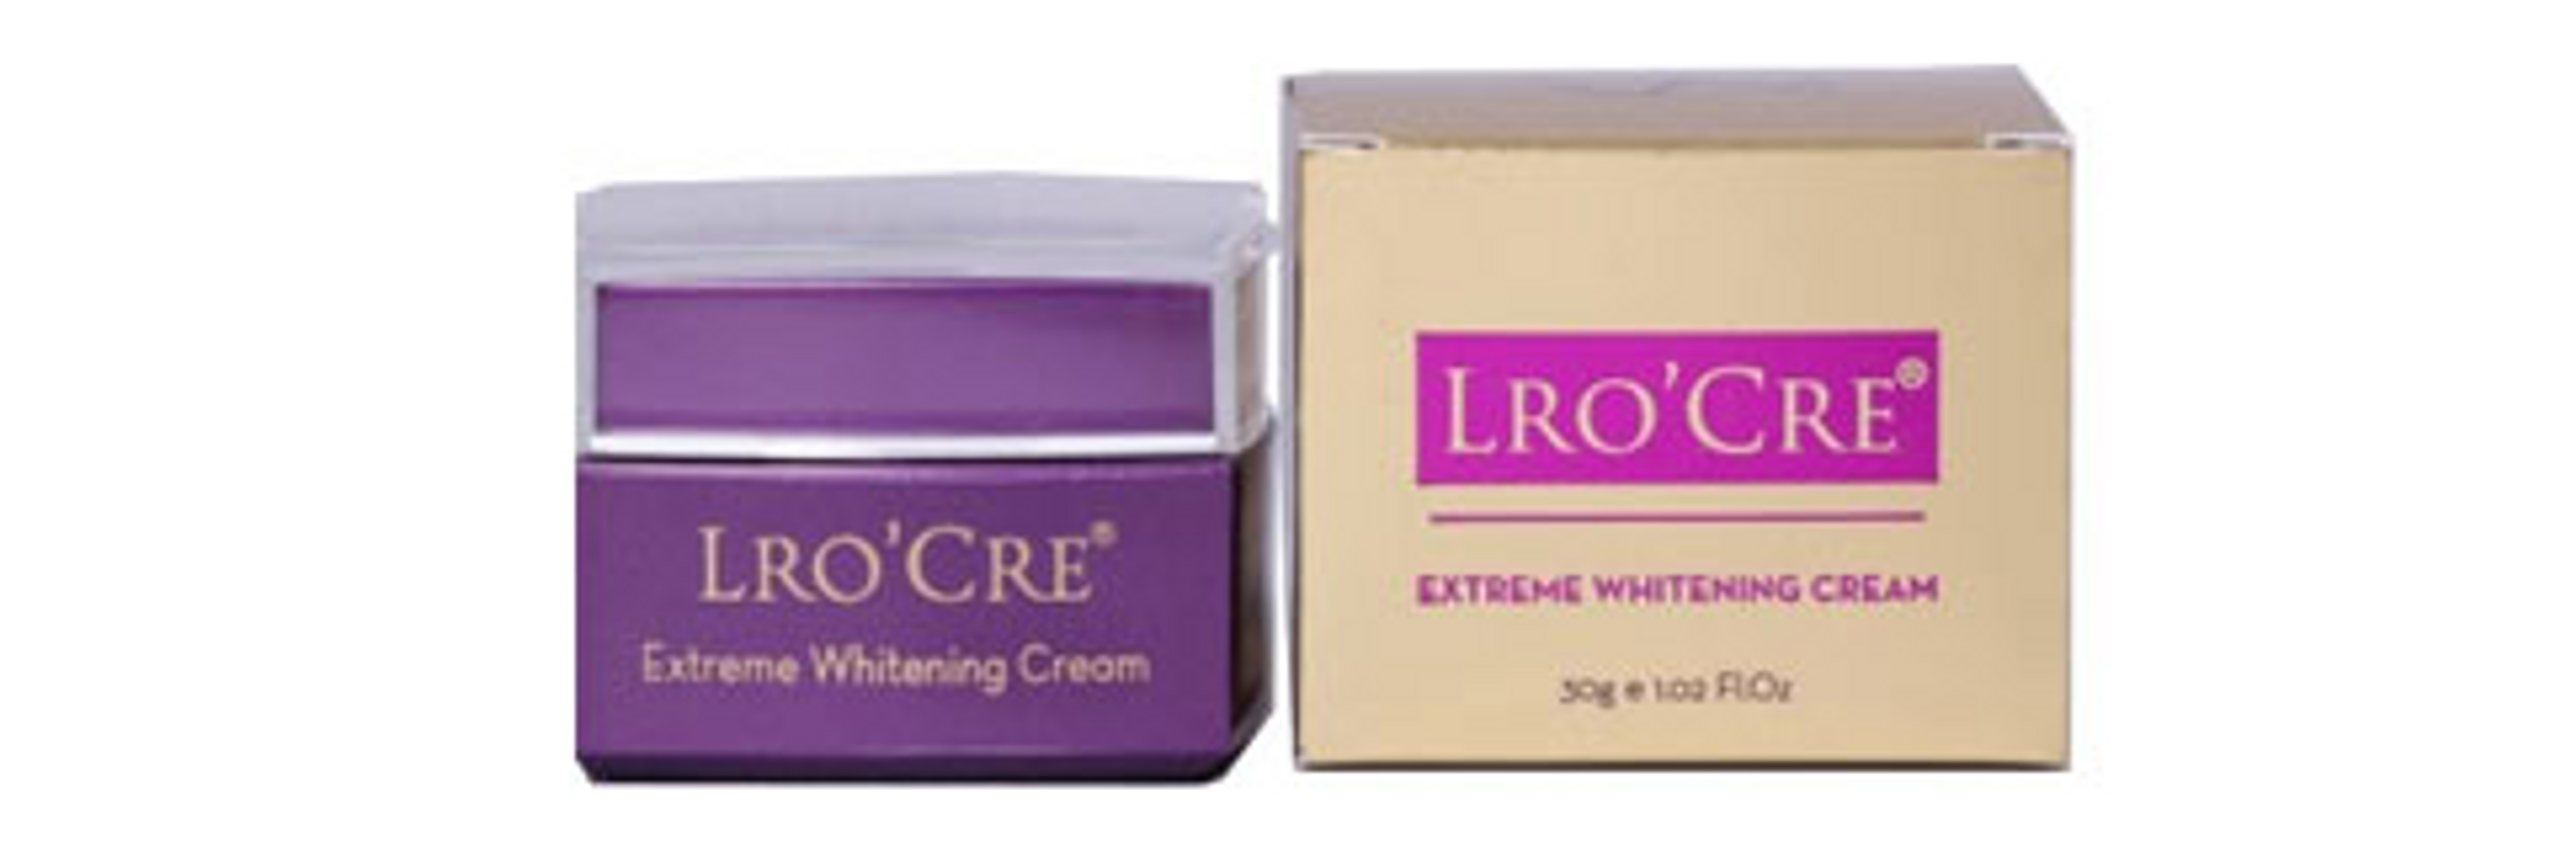 Lro’cre Extreme Whitening Cream sử dụng cho ban đêm 